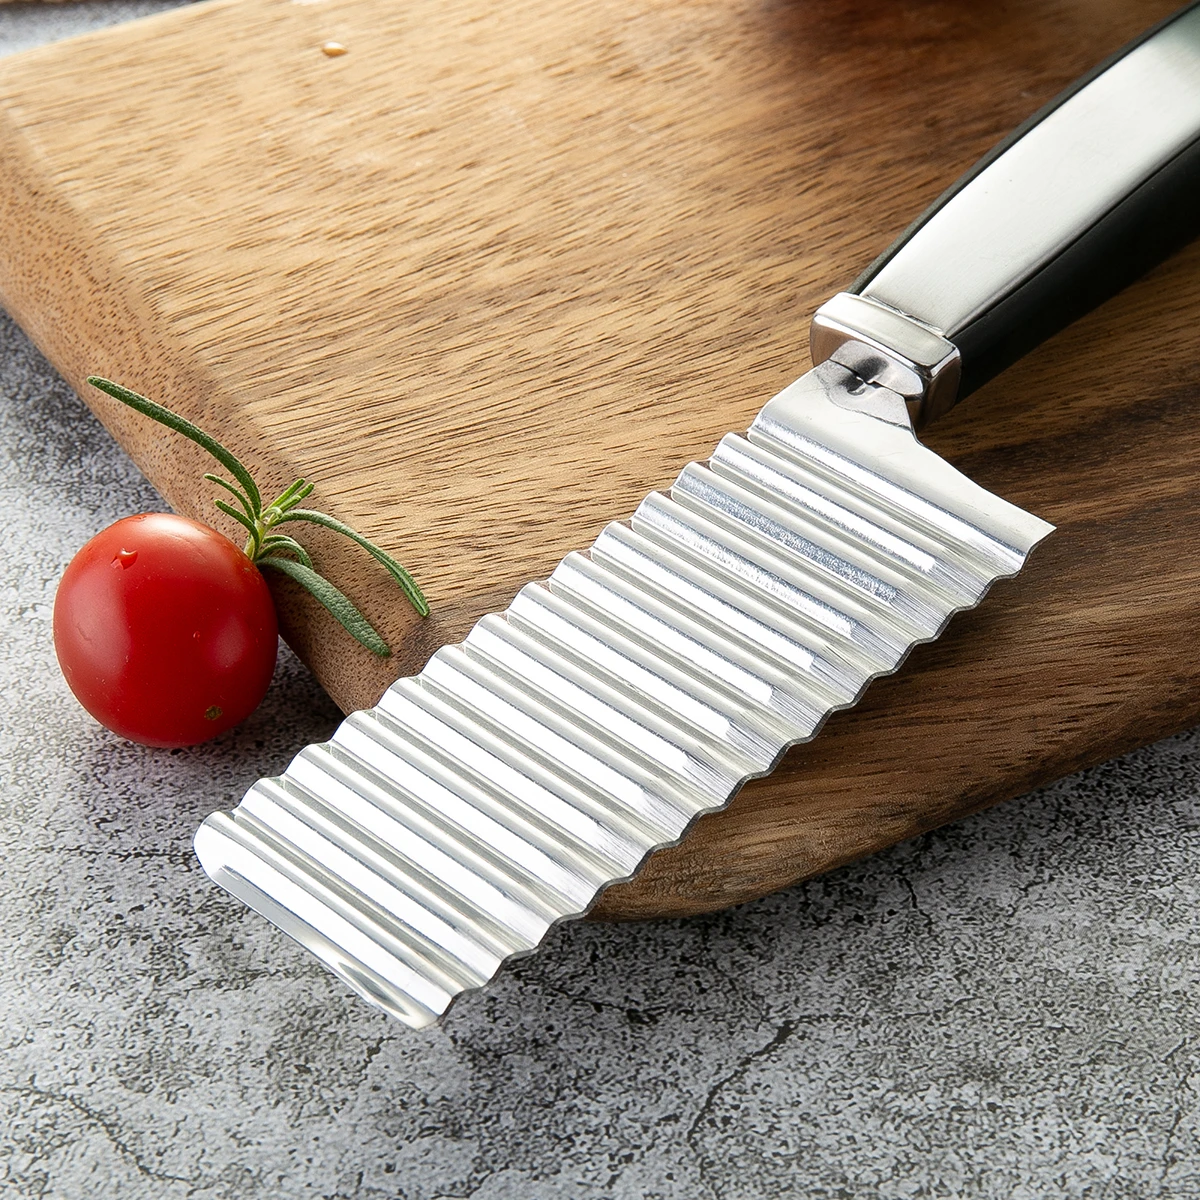 DAOMACHEN китайский нож из нержавеющей стали с деревянной ручкой 7cr17 высокоуглеродный резак профессиональный нож шеф-повара инструменты для приготовления пищи